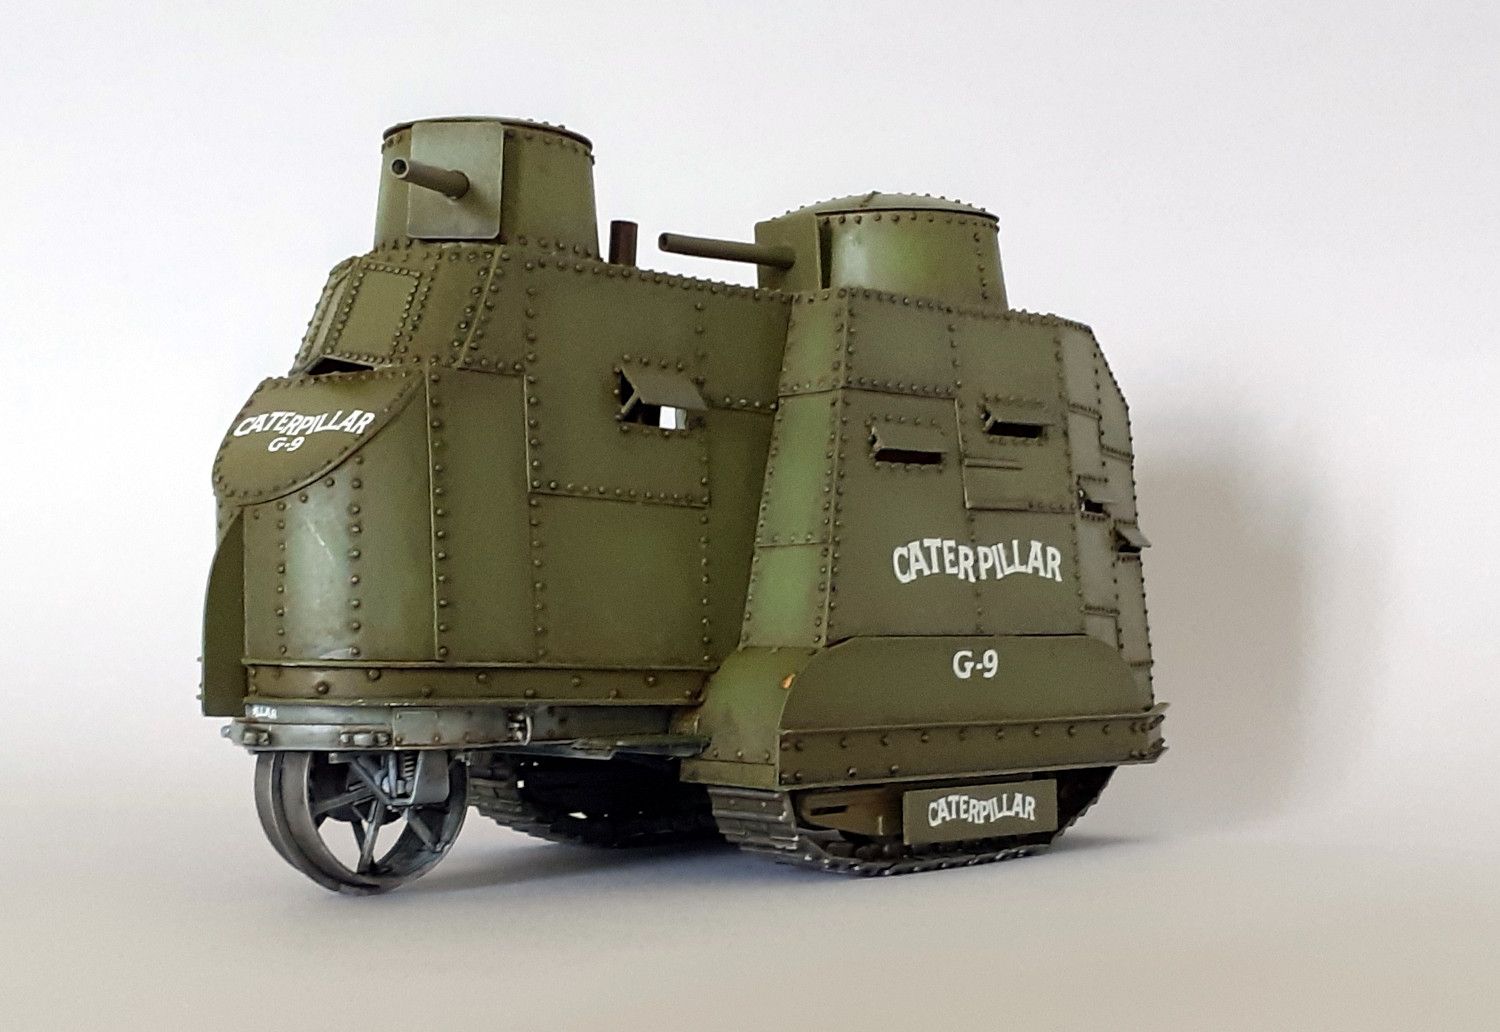 Caterpillar G9 : 1er tank US de l'Histoire [base tracteur Holt Roden + scratch] de Lostiznaos 663e8bb39bea1